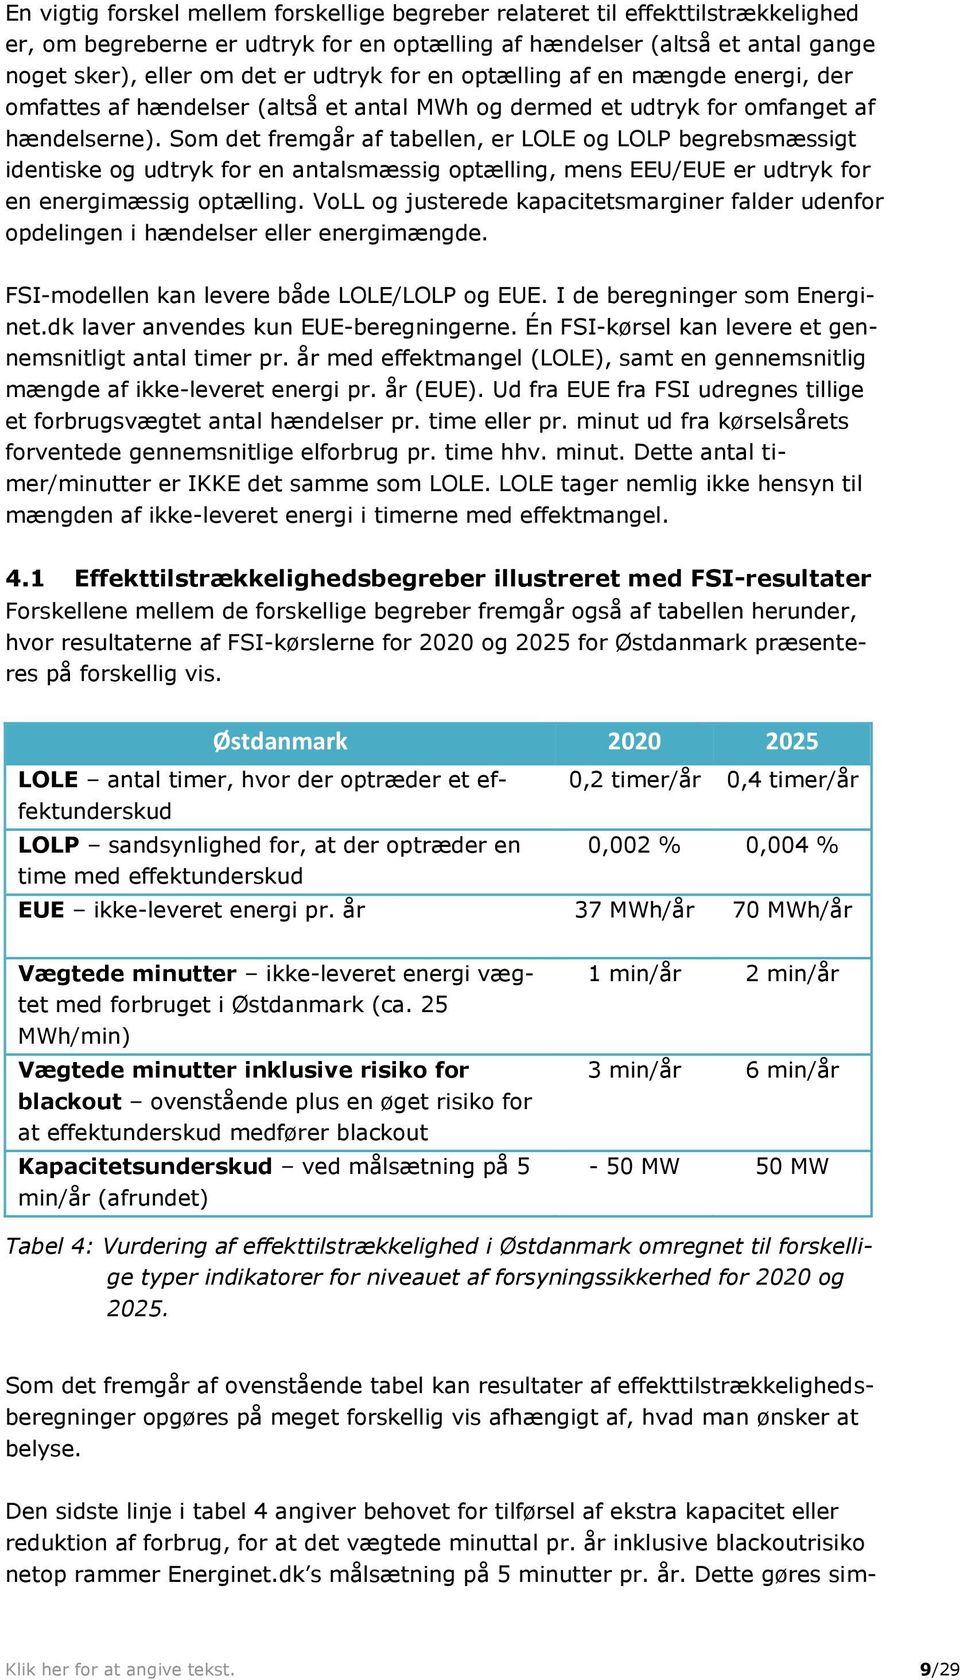 Som det fremgår af tabellen, er LOLE og LOLP begrebsmæssigt identiske og udtryk for en antalsmæssig optælling, mens EEU/EUE er udtryk for en energimæssig optælling.